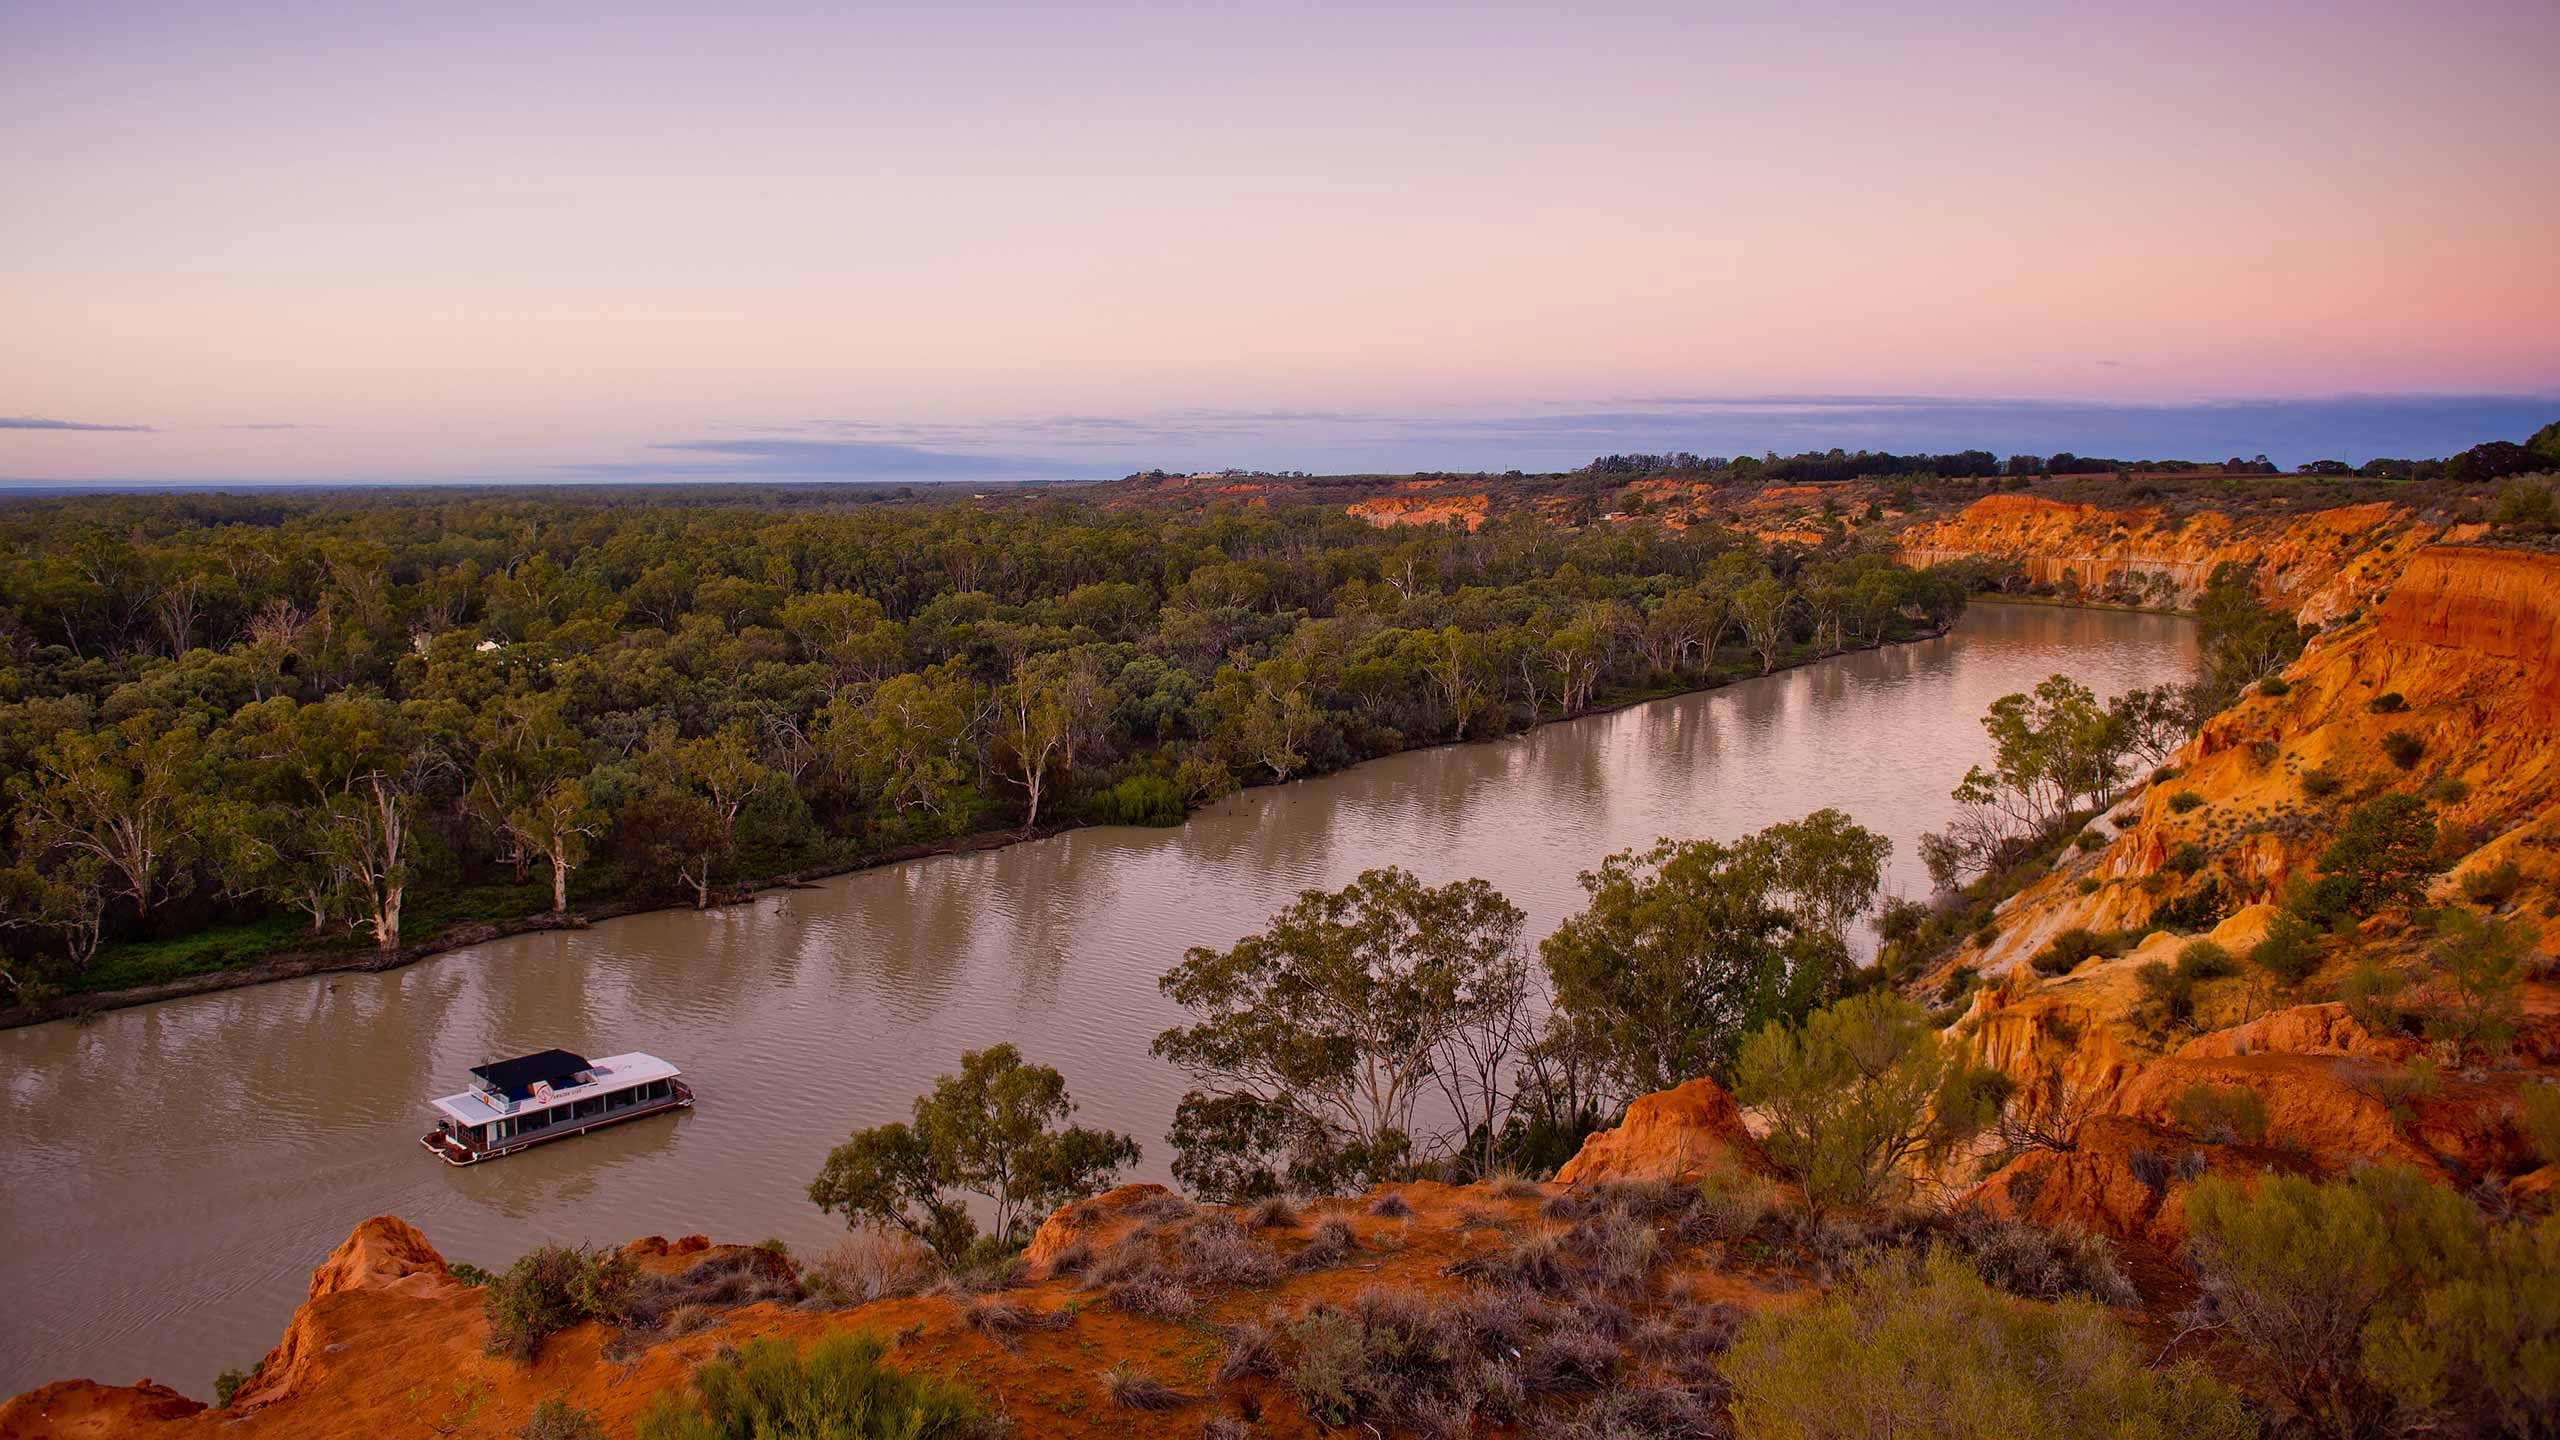 Река дарлинг полноводна. Муррей и Дарлинг. Реки Дарлинг и Муррей. Река Муррей в Австралии. Река Дарлинг в Австралии.